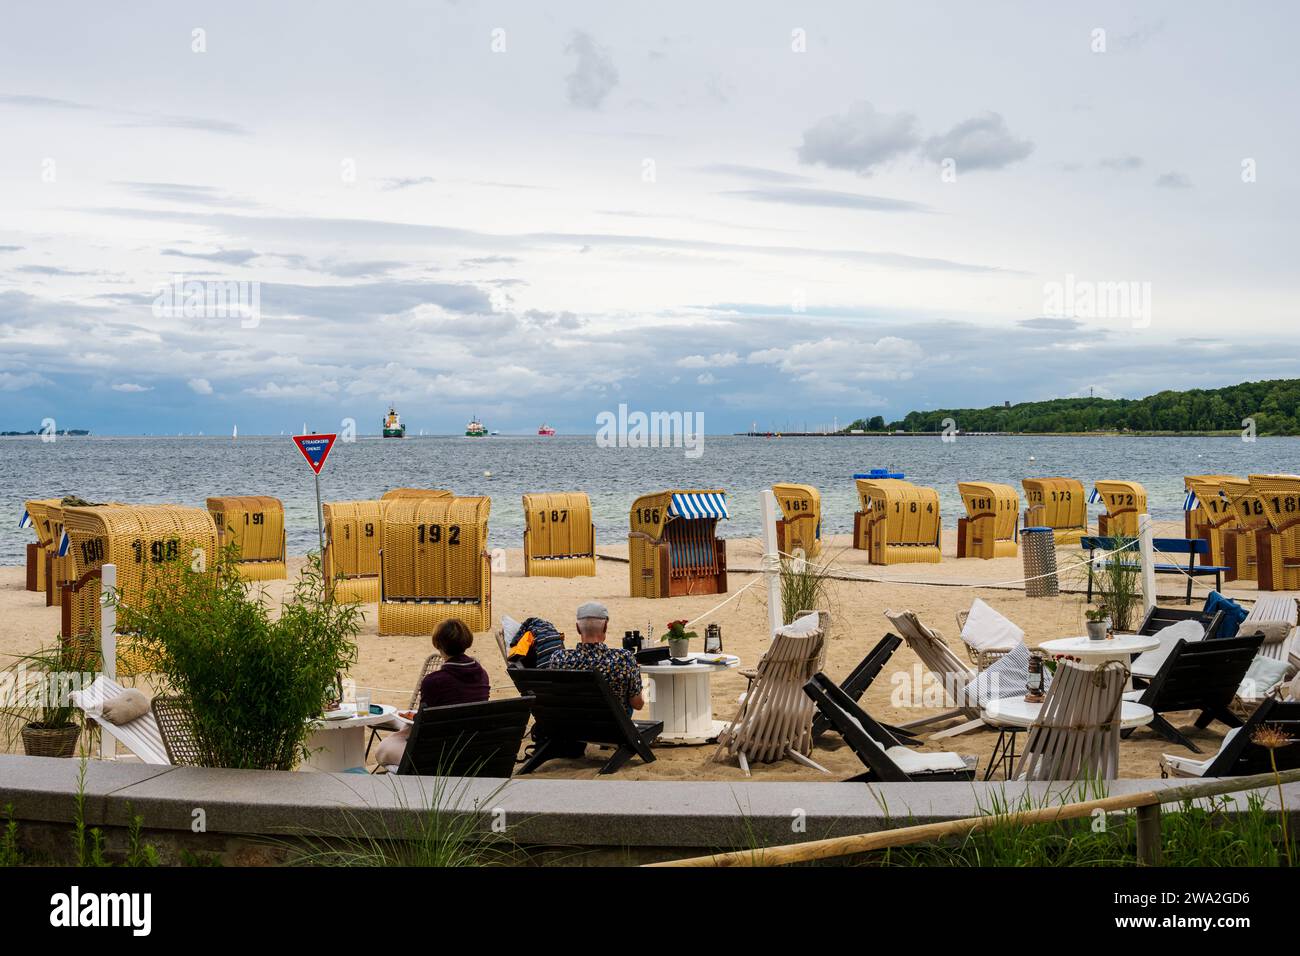 Strand des Ostseebades Heikendorf mit Strandkörben und herrlicher Aussicht auf die vorbeifahrenden Schiffe Stock Photo